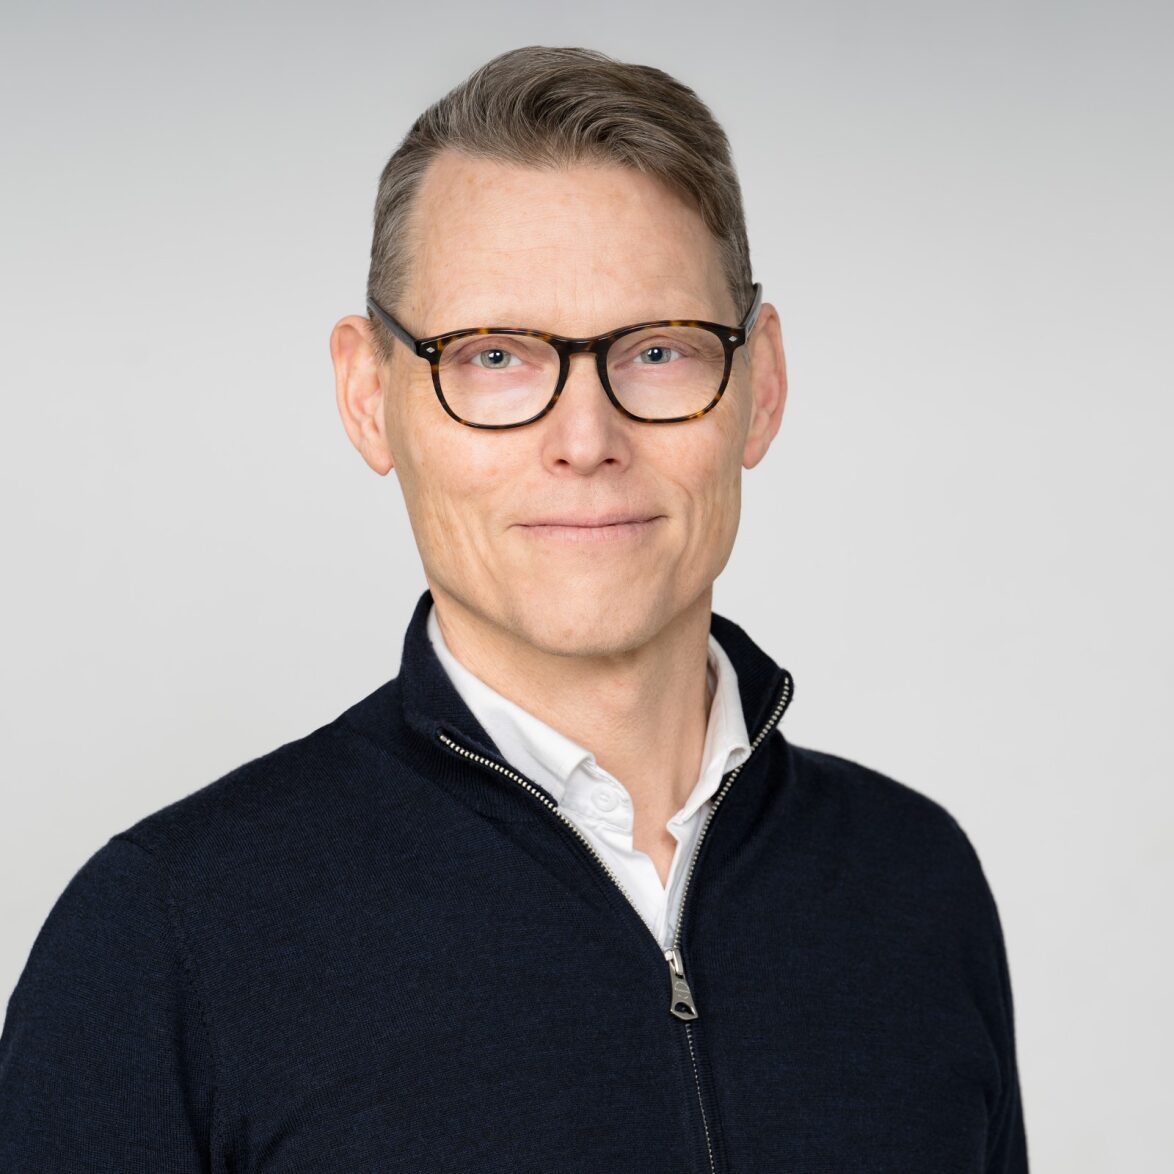 Johan Wetterholm